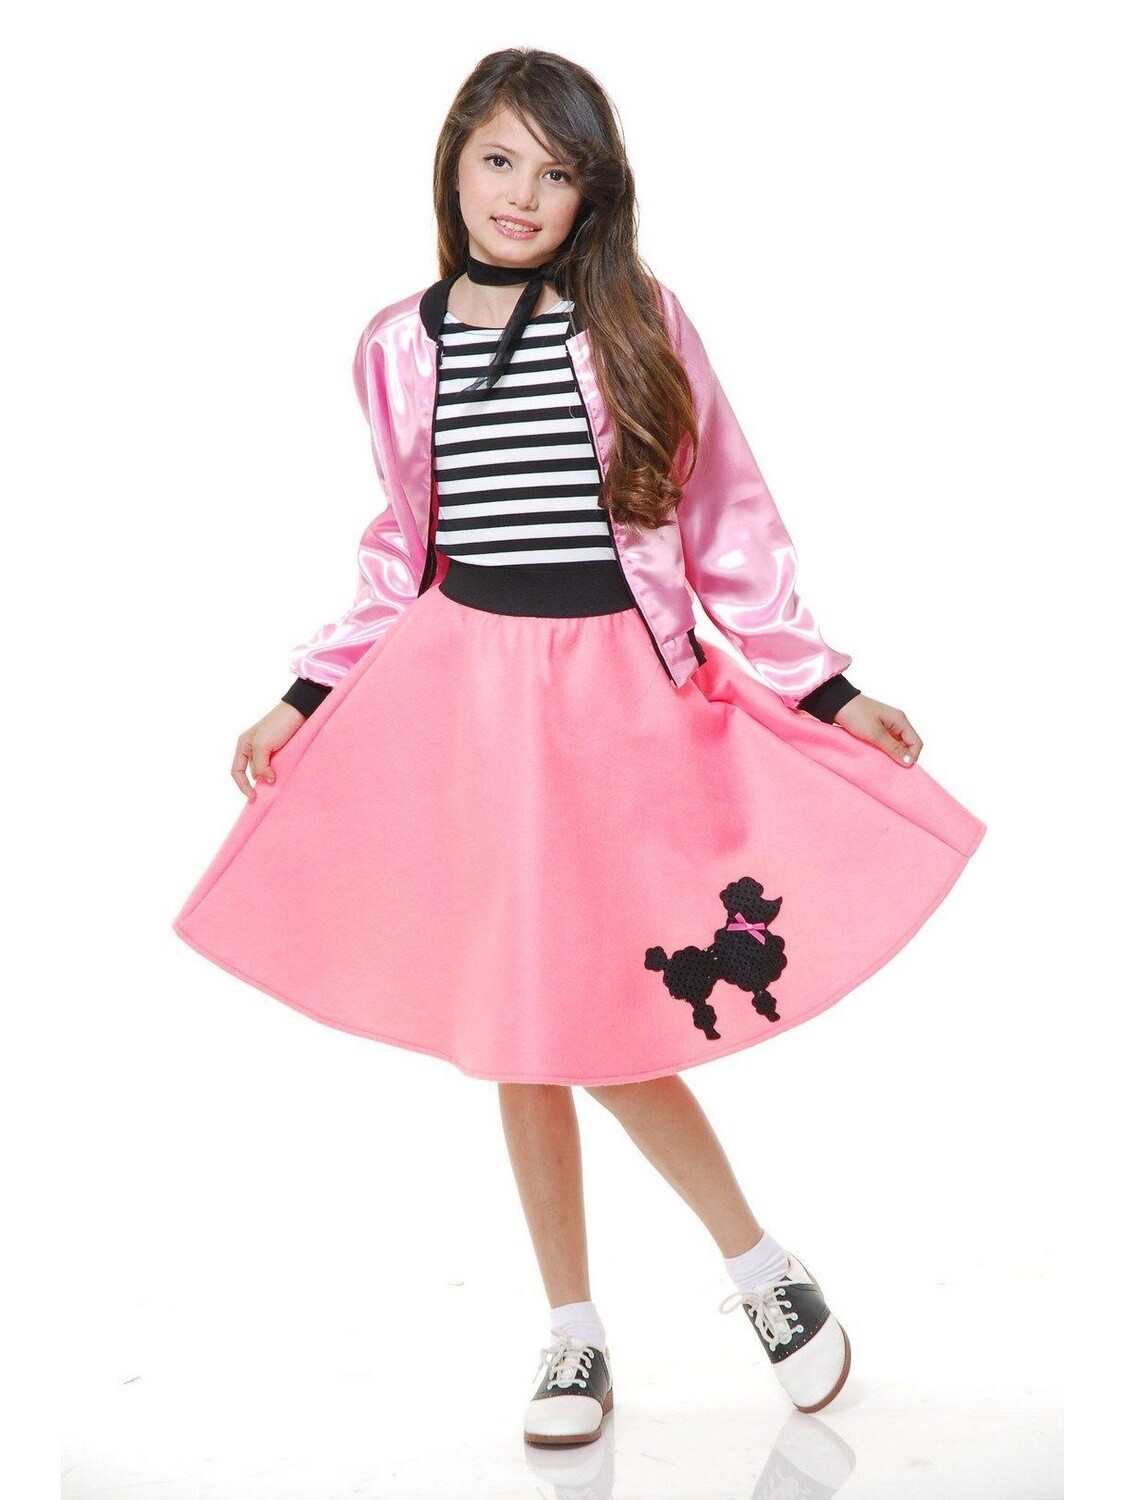 Poodle Skirt Pink Child